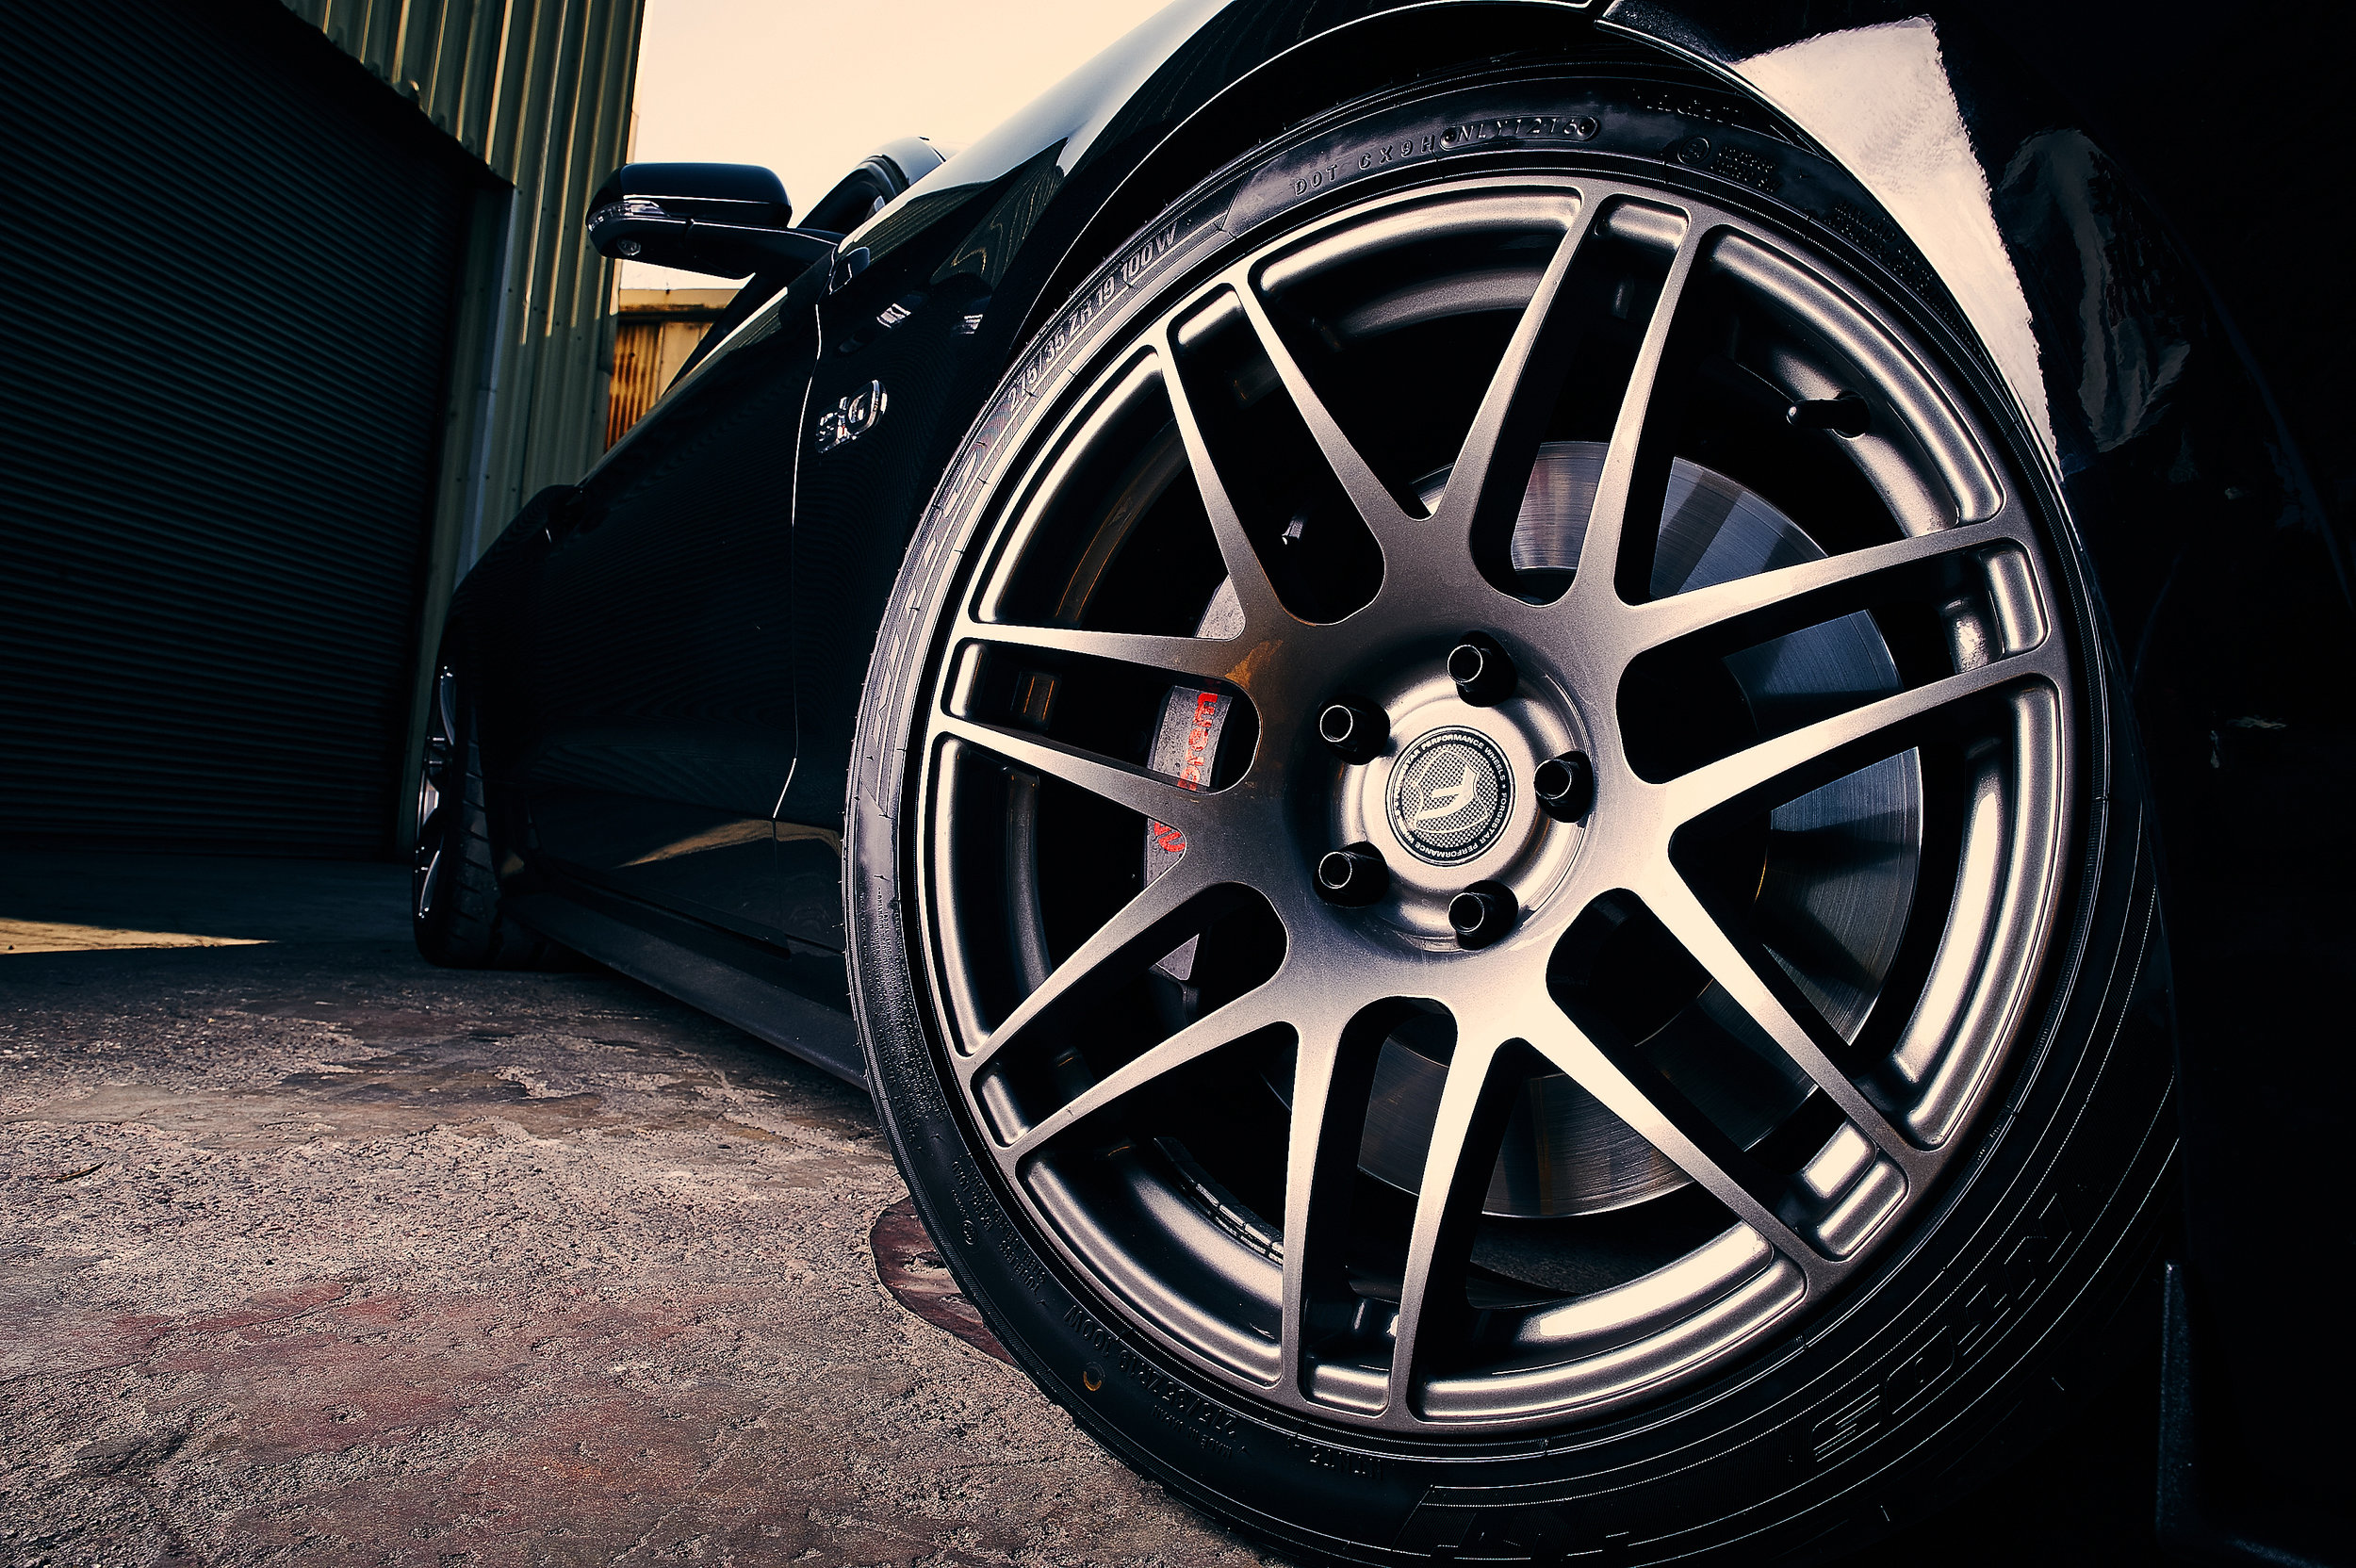 Mustang wheels copy.jpg